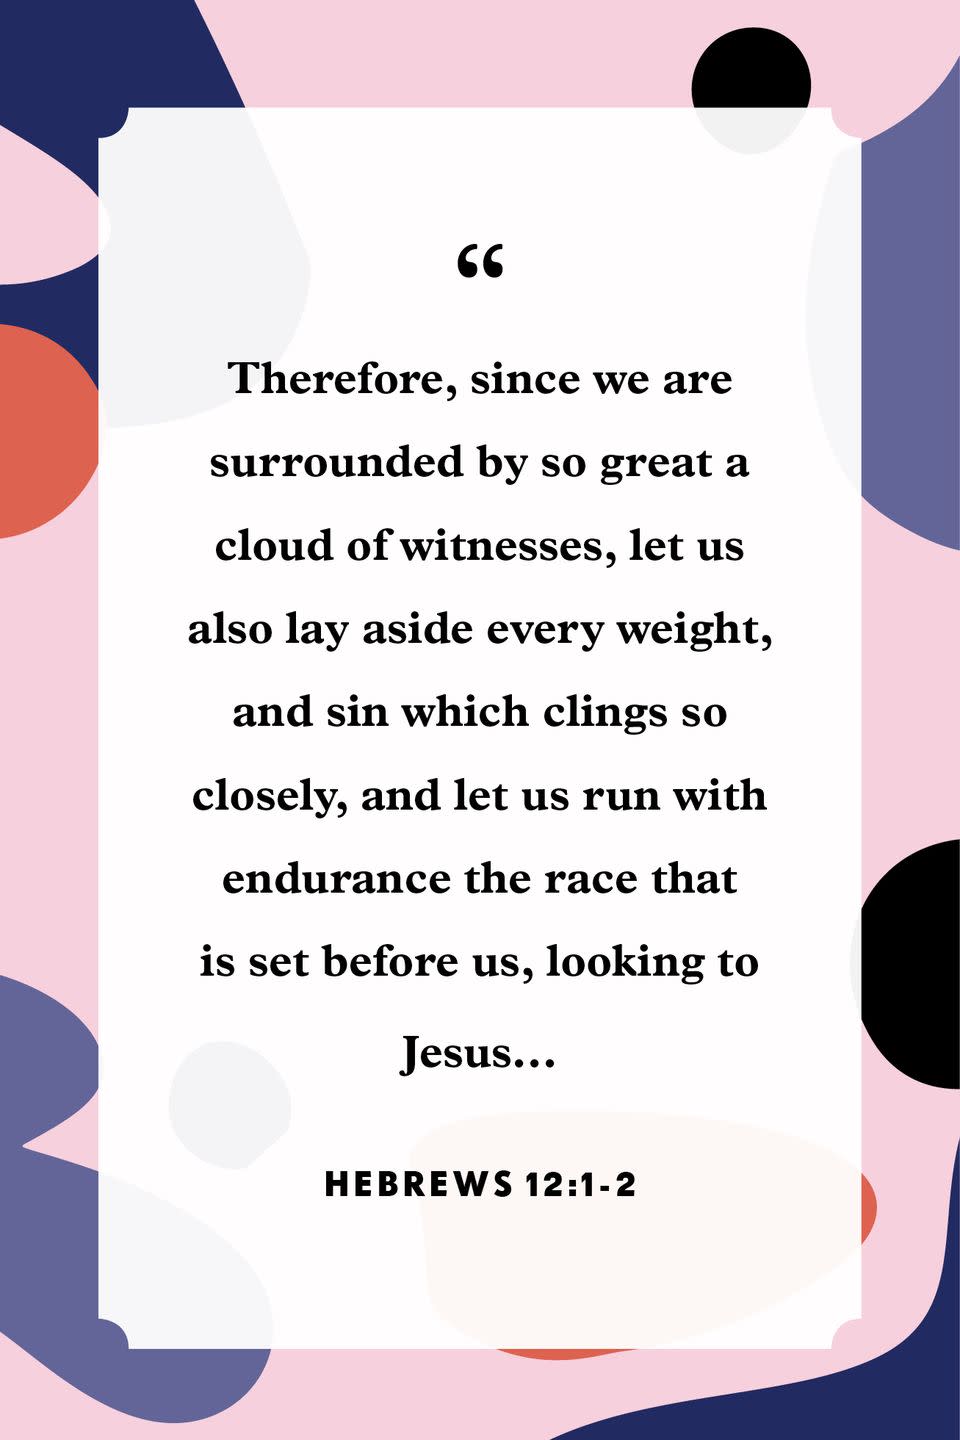 15) Hebrews 12:1-2